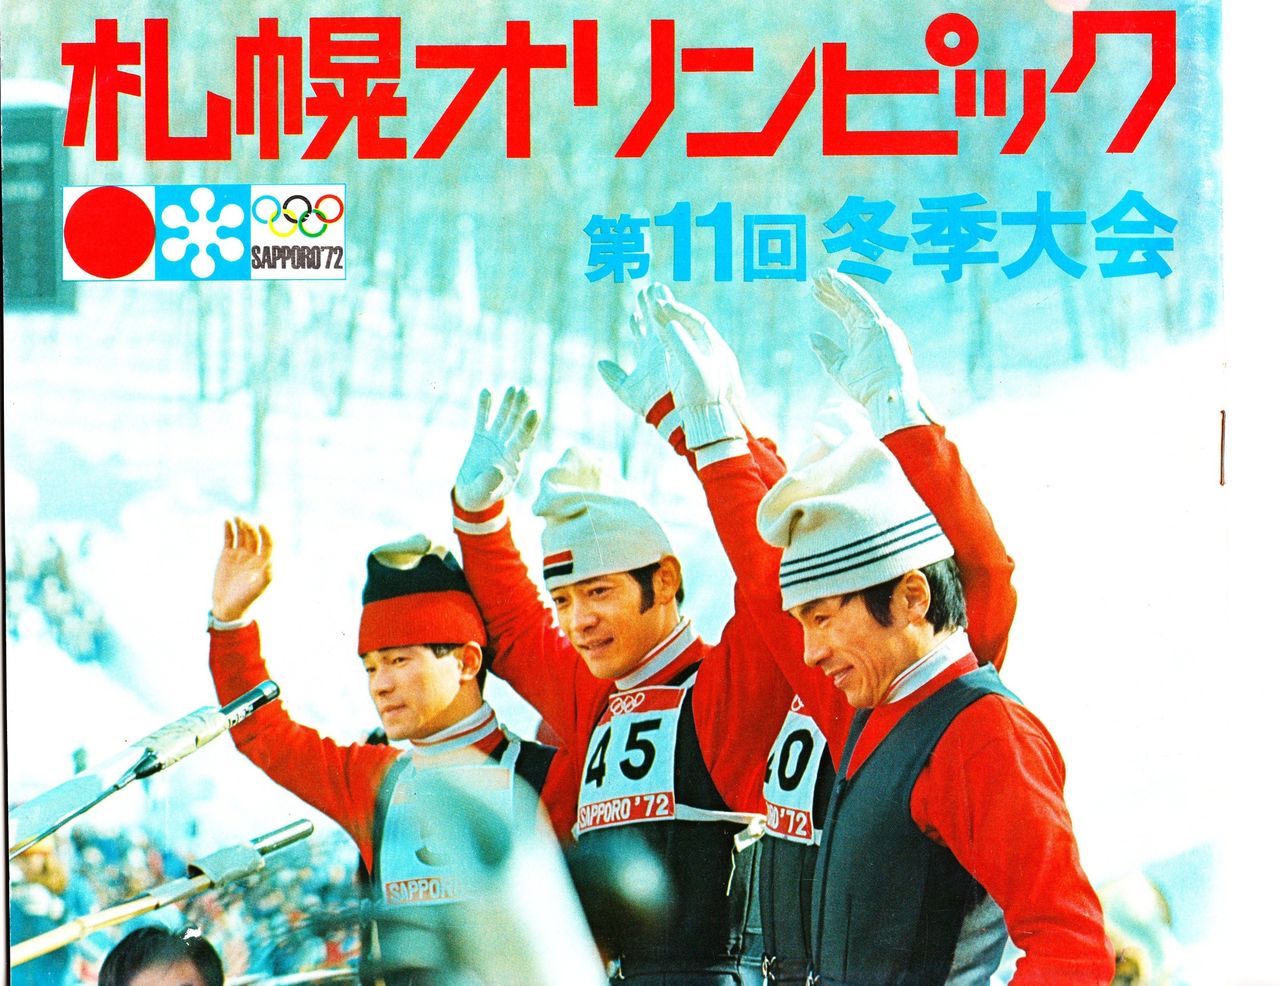 1972年札幌オリンピック記念メダル、笠谷選手日本人初の金メダル